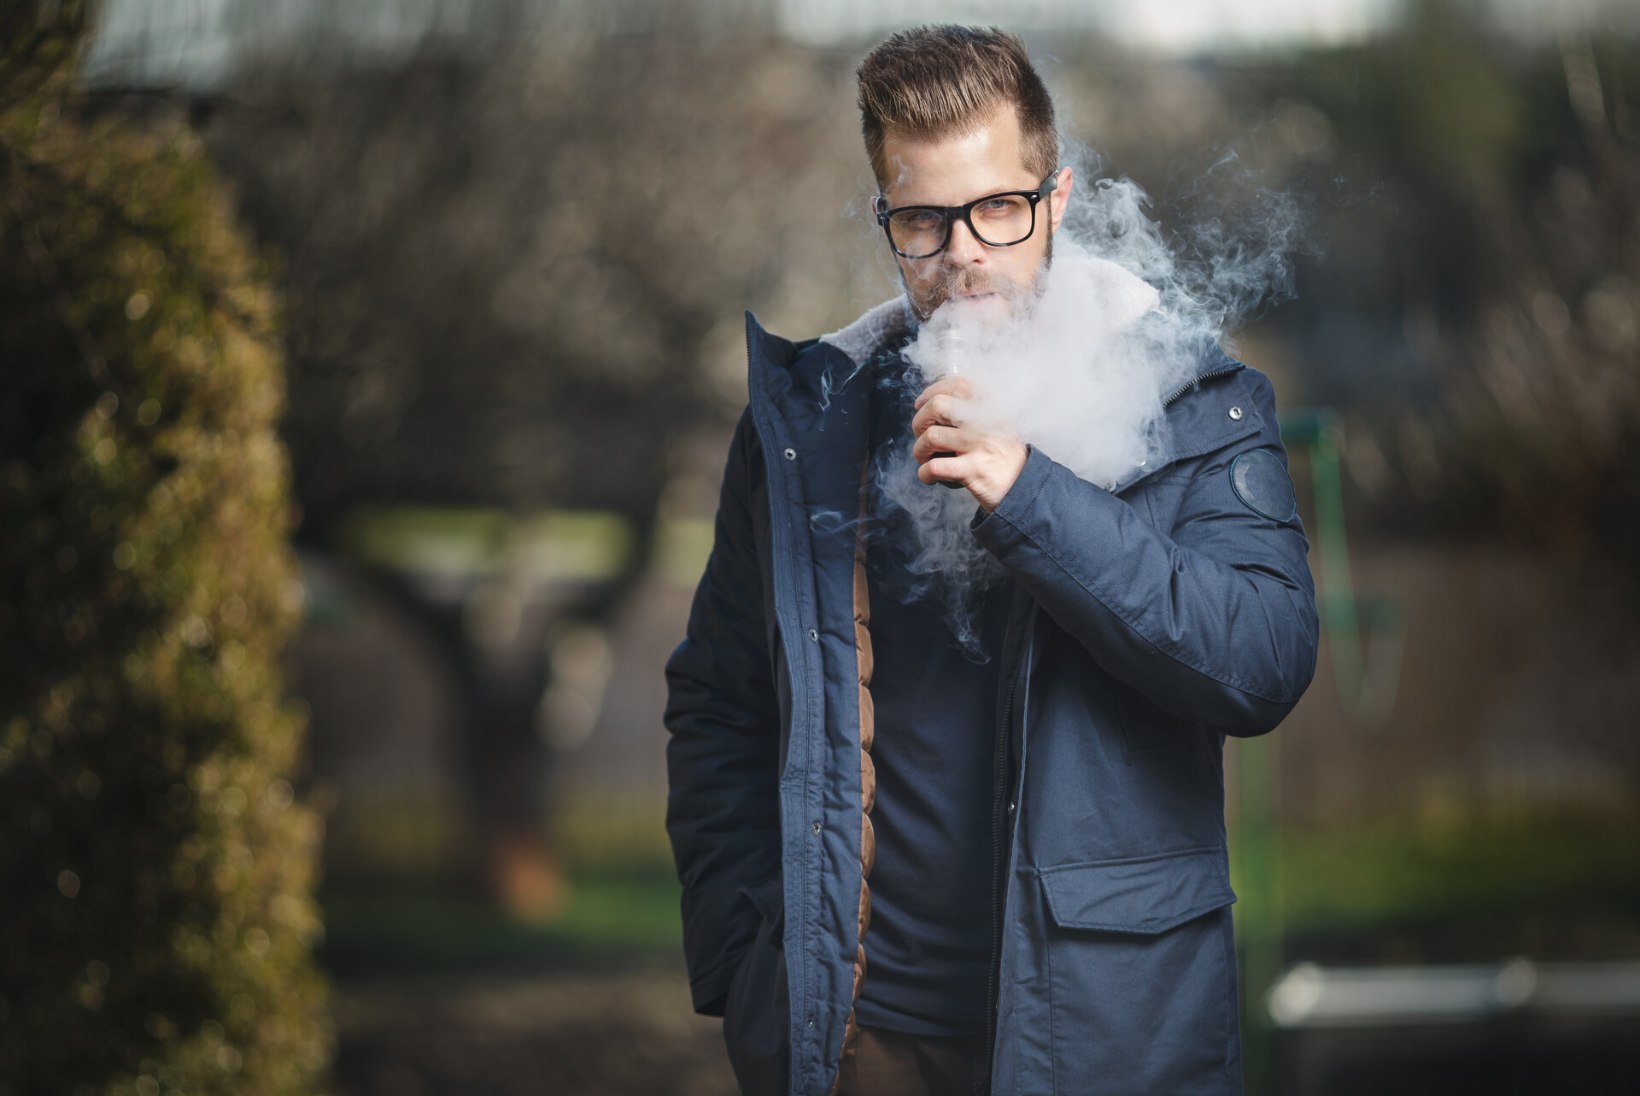 AEG LÕPETADA TOSSUTAMINE! Suitsetaja kopsud jaksavad koroonaviirusele vähem vastu panna